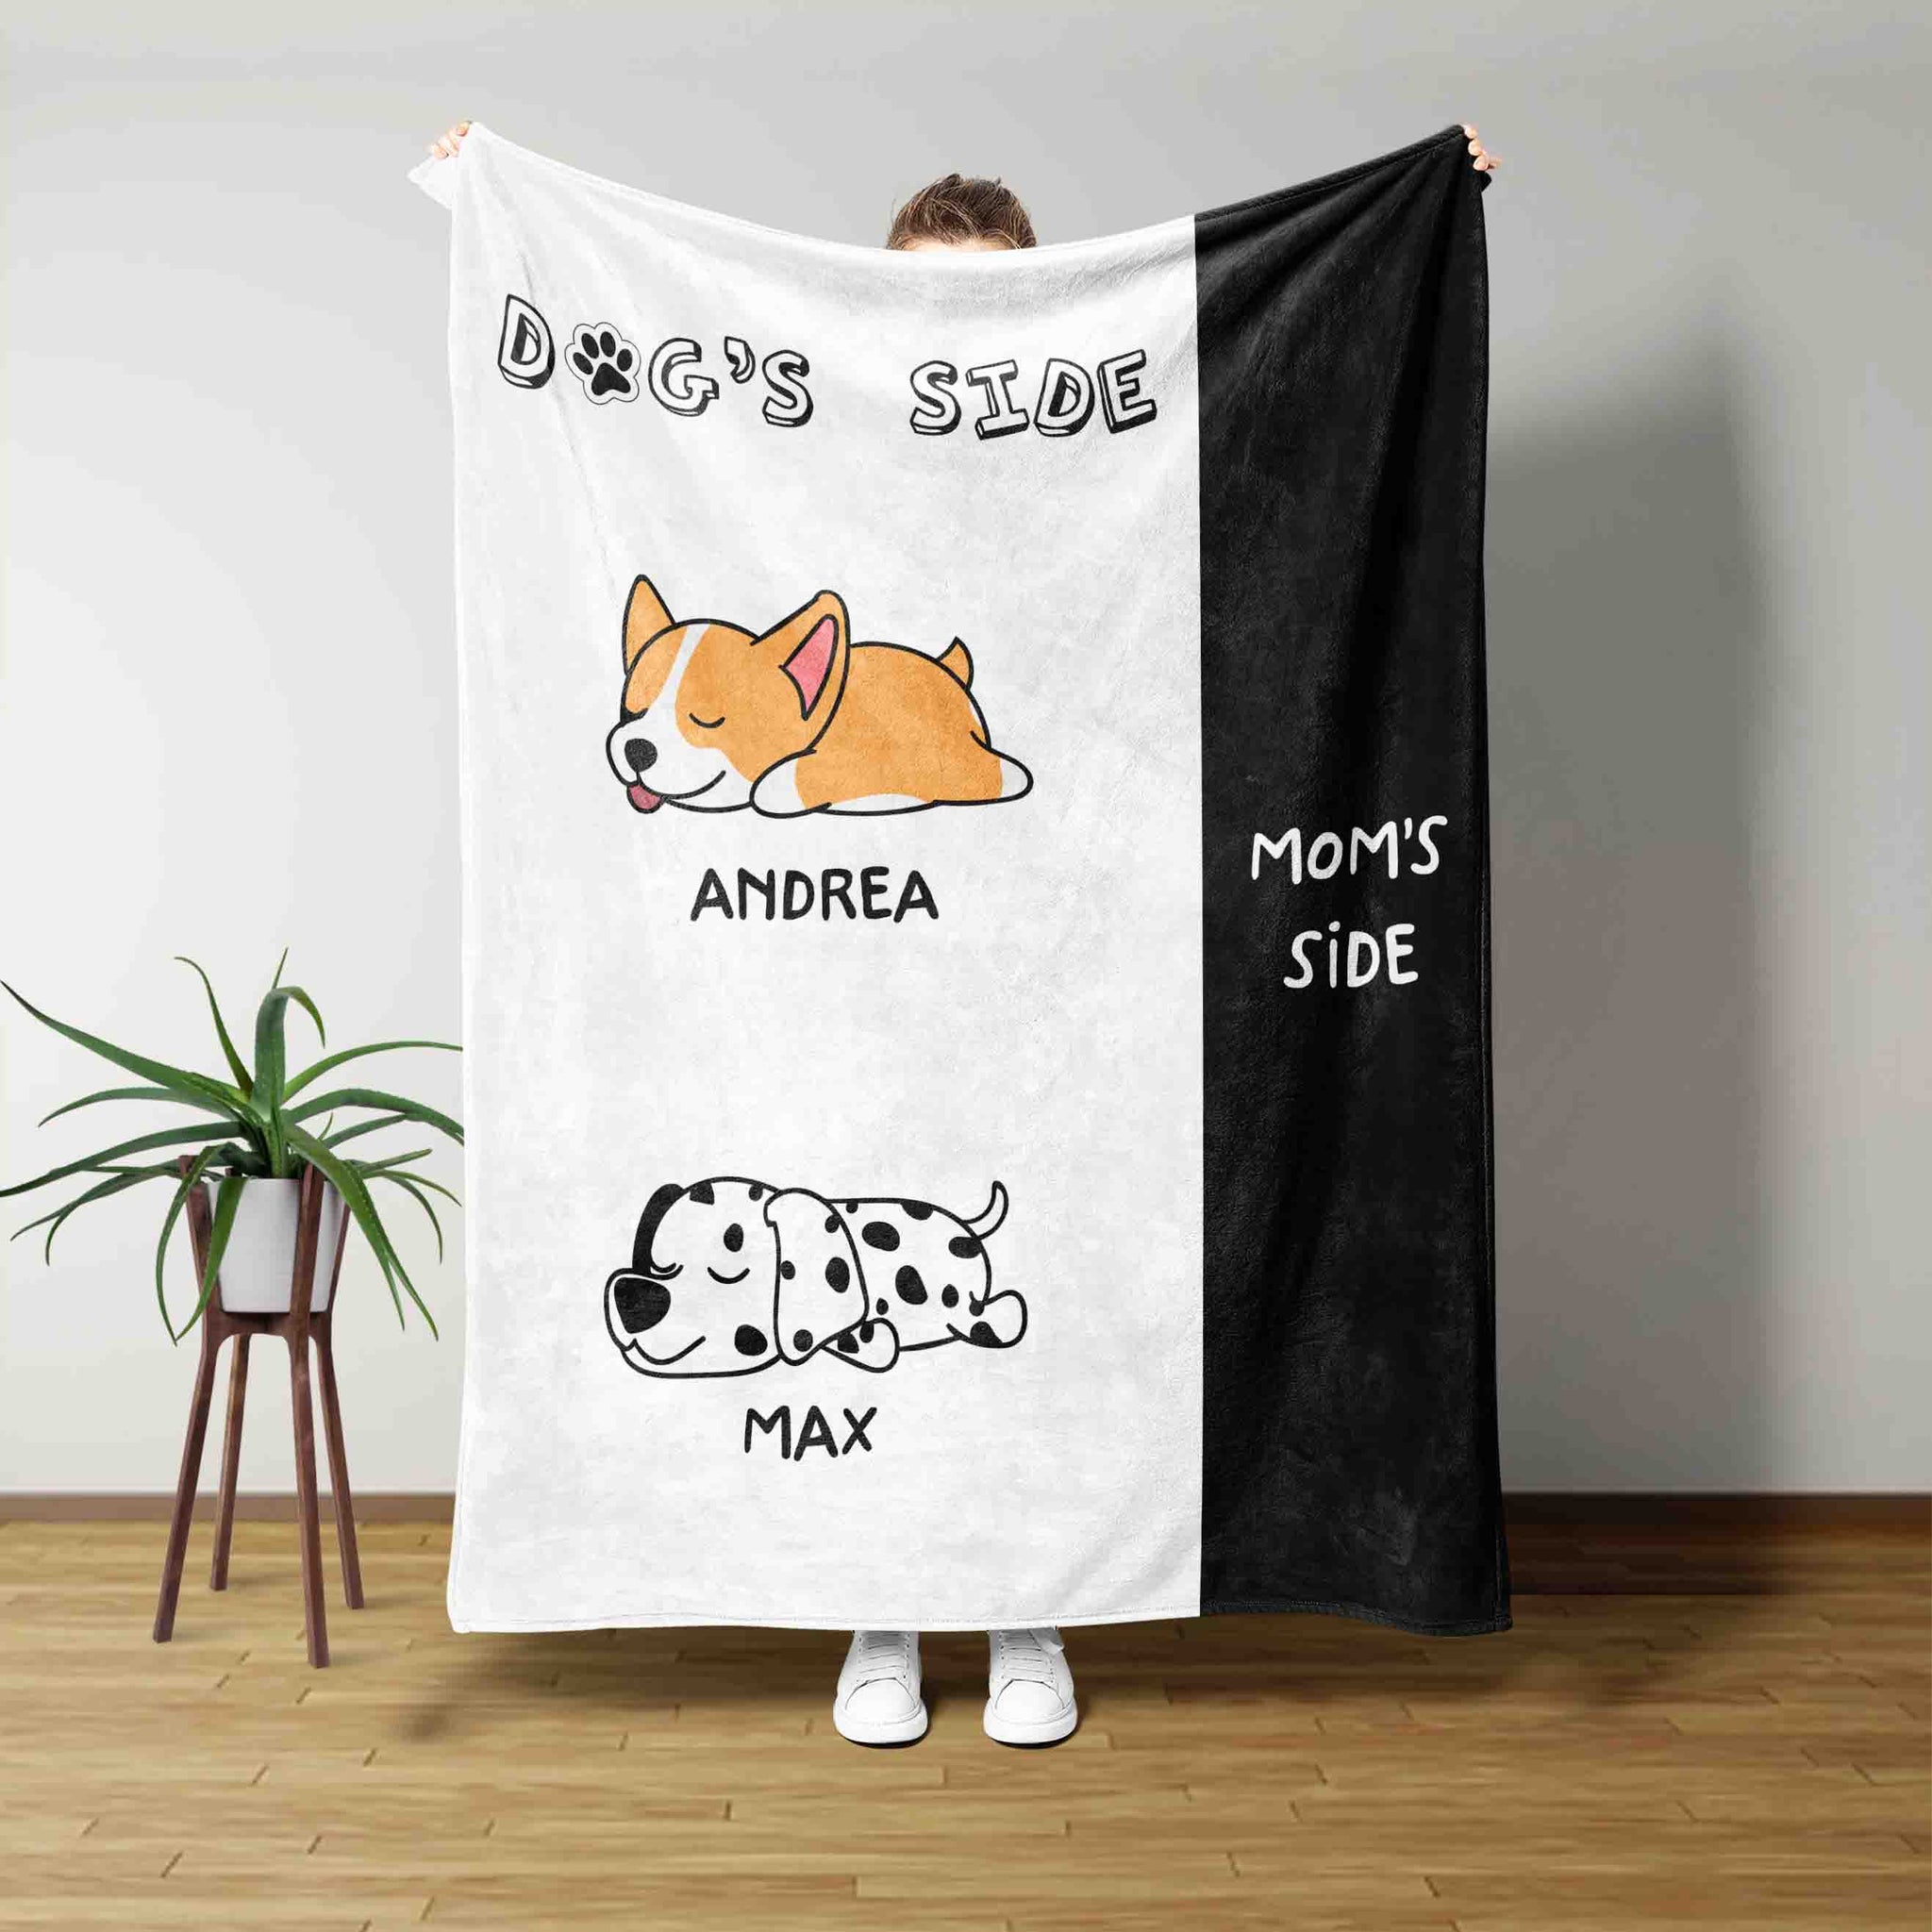 Custom Pet Blanket, Dog's Side Blanket, Mom's Side Blanket, Dog Blanket, Pet Blanket, Custom Name Blanket, Dog Lover Blanket, Gift For Pet Lover